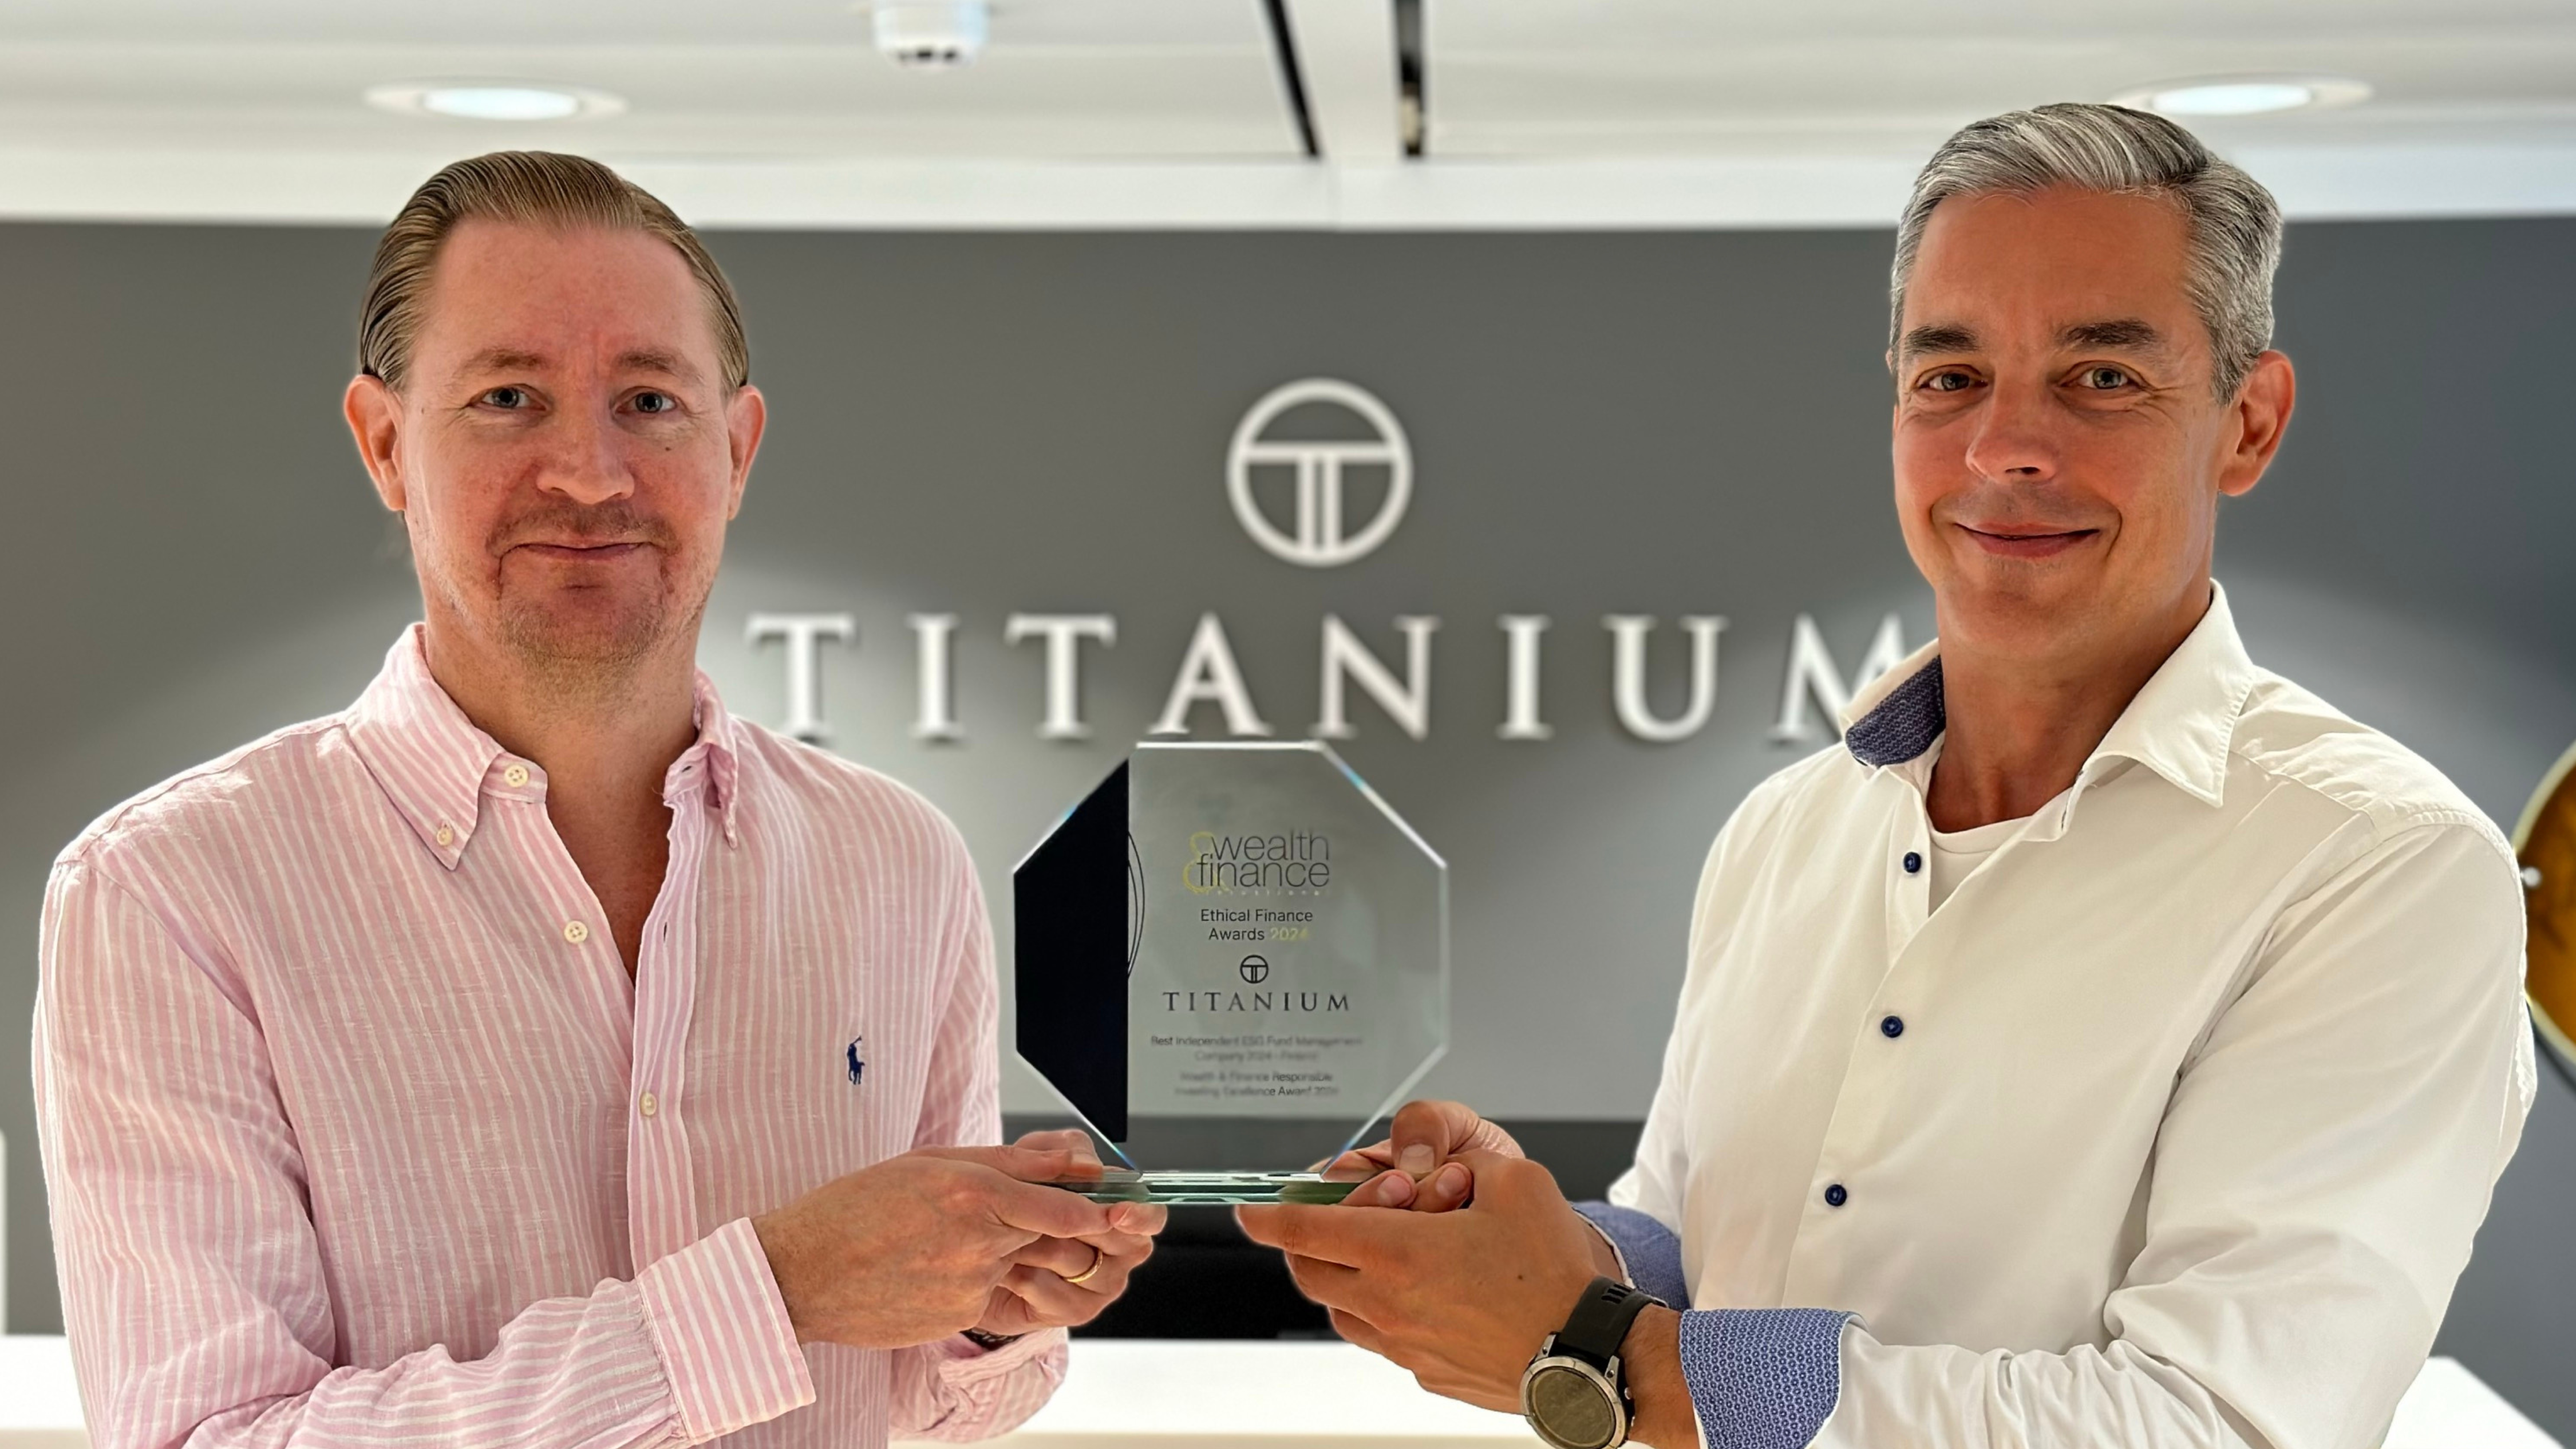 Titaniumin salkunhoidolle jo toistamiseen palkinto parhaasta ESG-rahastojen hallinnoinnista